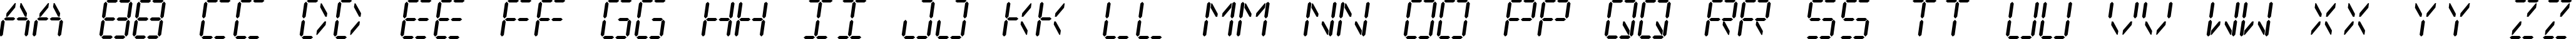 Пример написания английского алфавита шрифтом Digital dream Skew